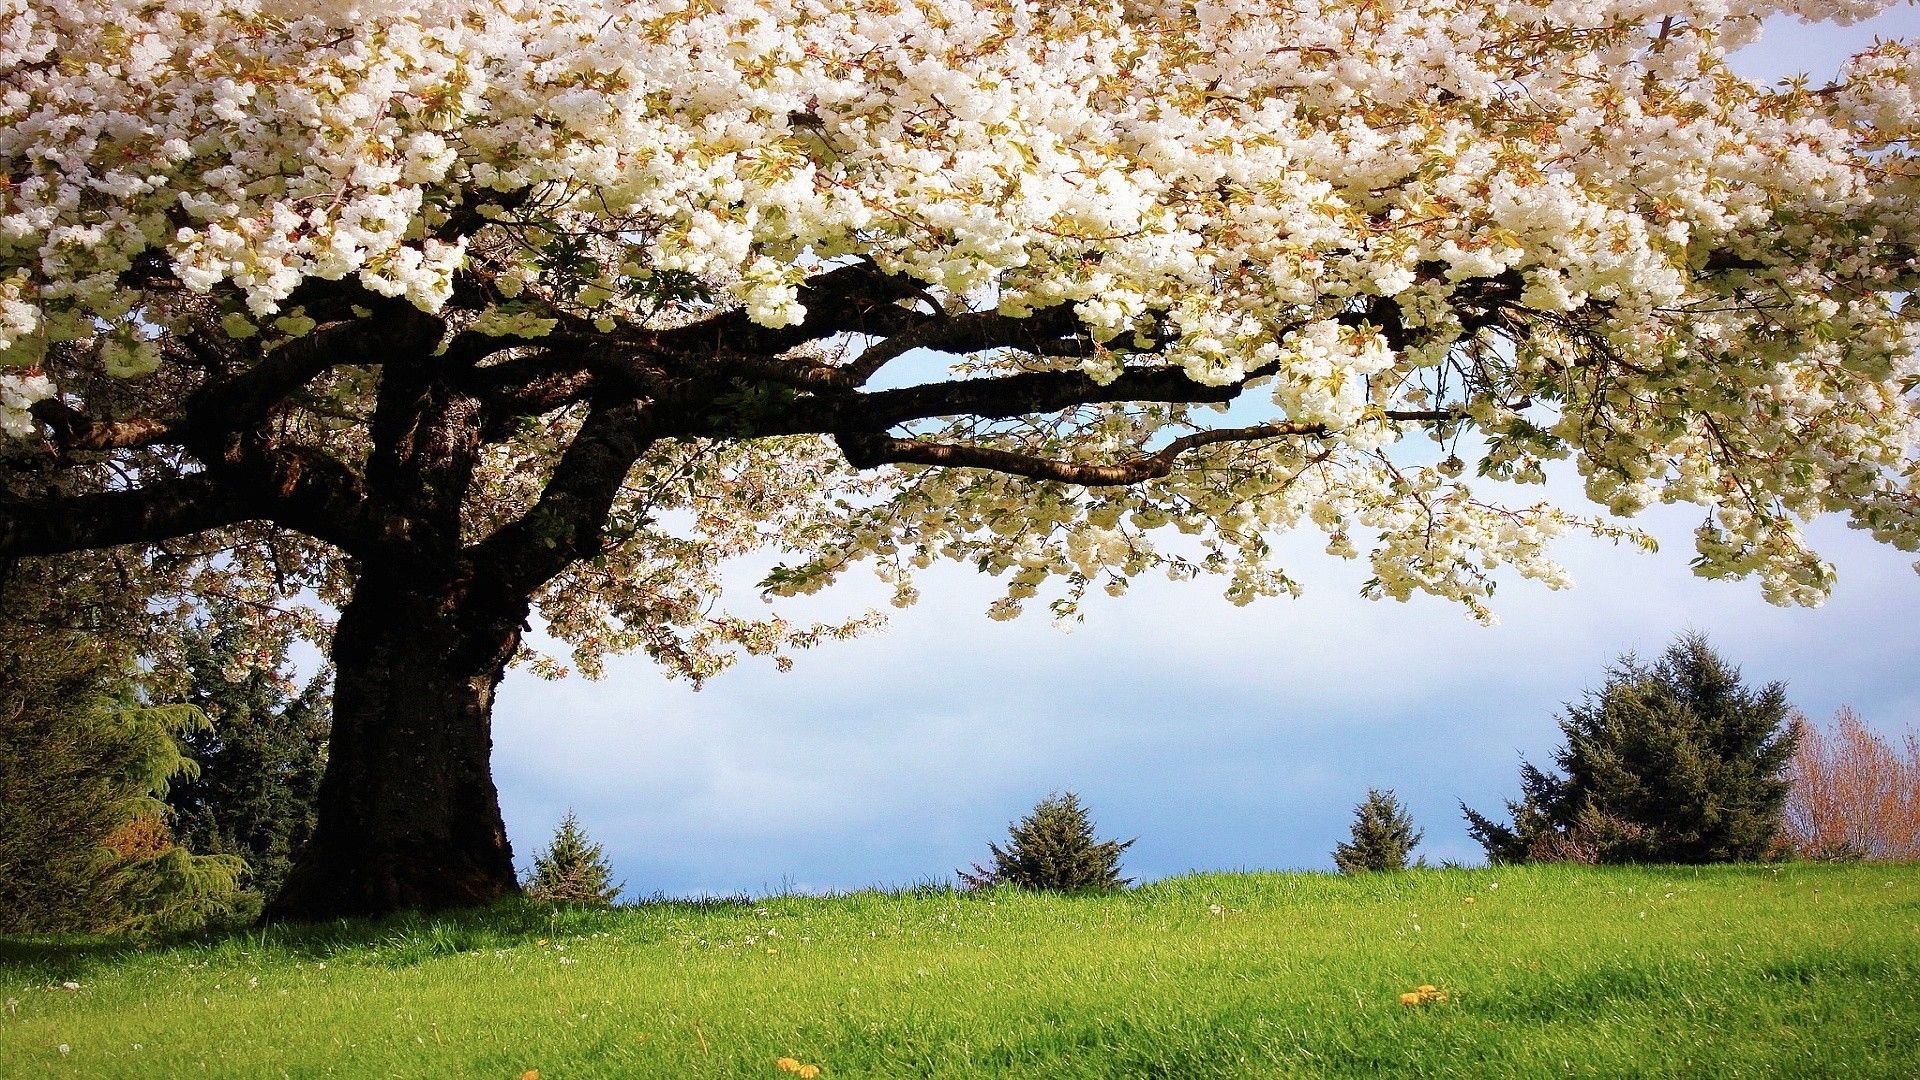 دانلود عکس درختی با شکوفه های سفید برای زمینه ی کامپیوتر